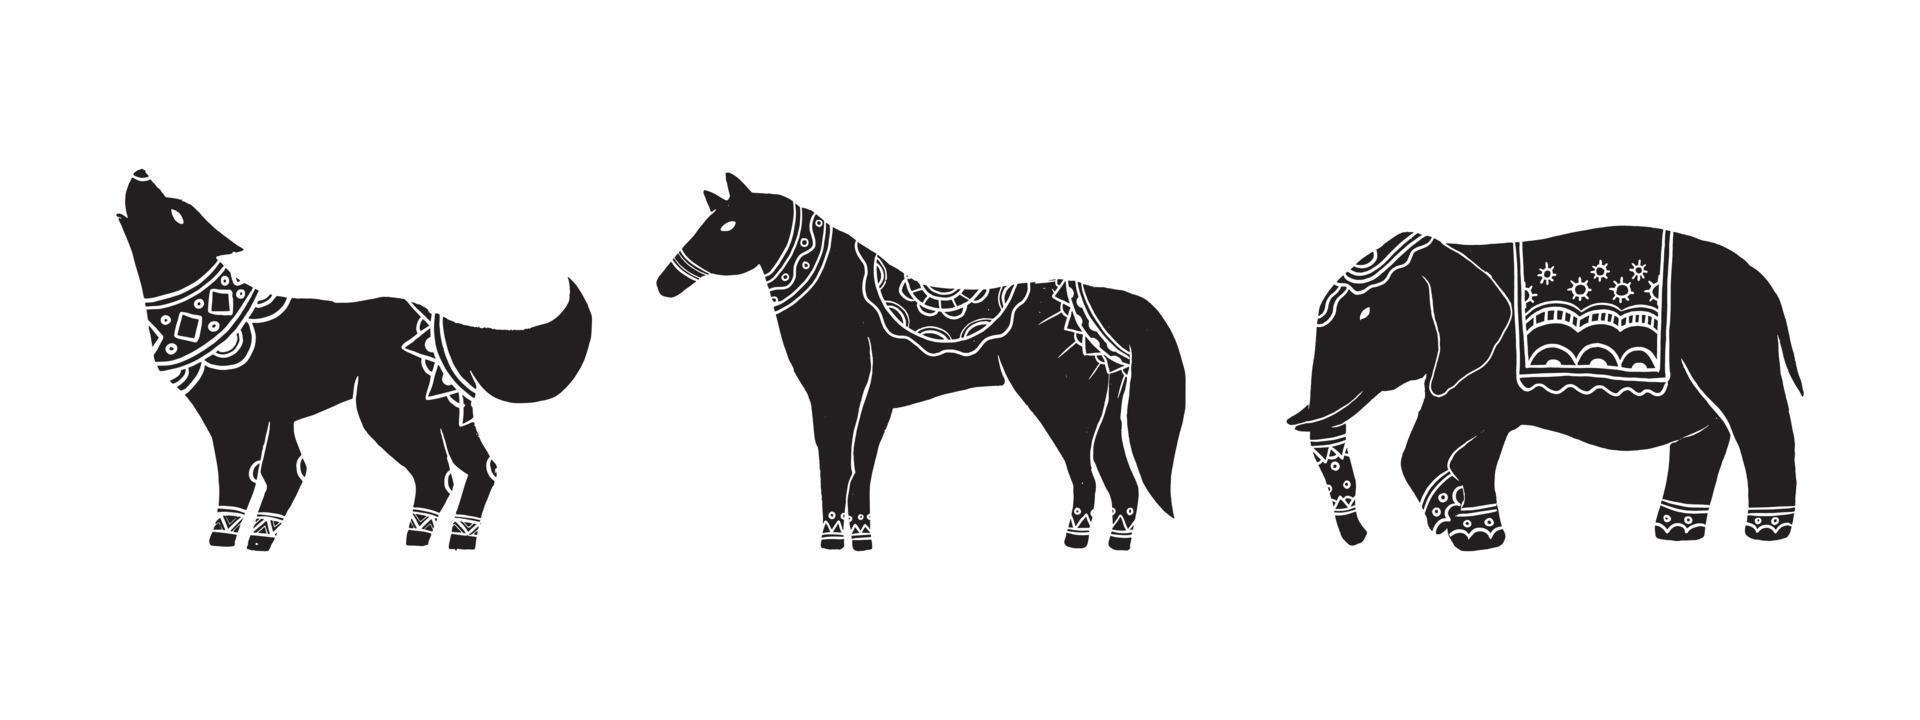 o objeto abstrato nos estilos escandinavos contemporâneos. silhueta de tinta ilustrações vetoriais de lobo, cavalo e elefante que têm algum padrão de ornamento nas costas. vetor